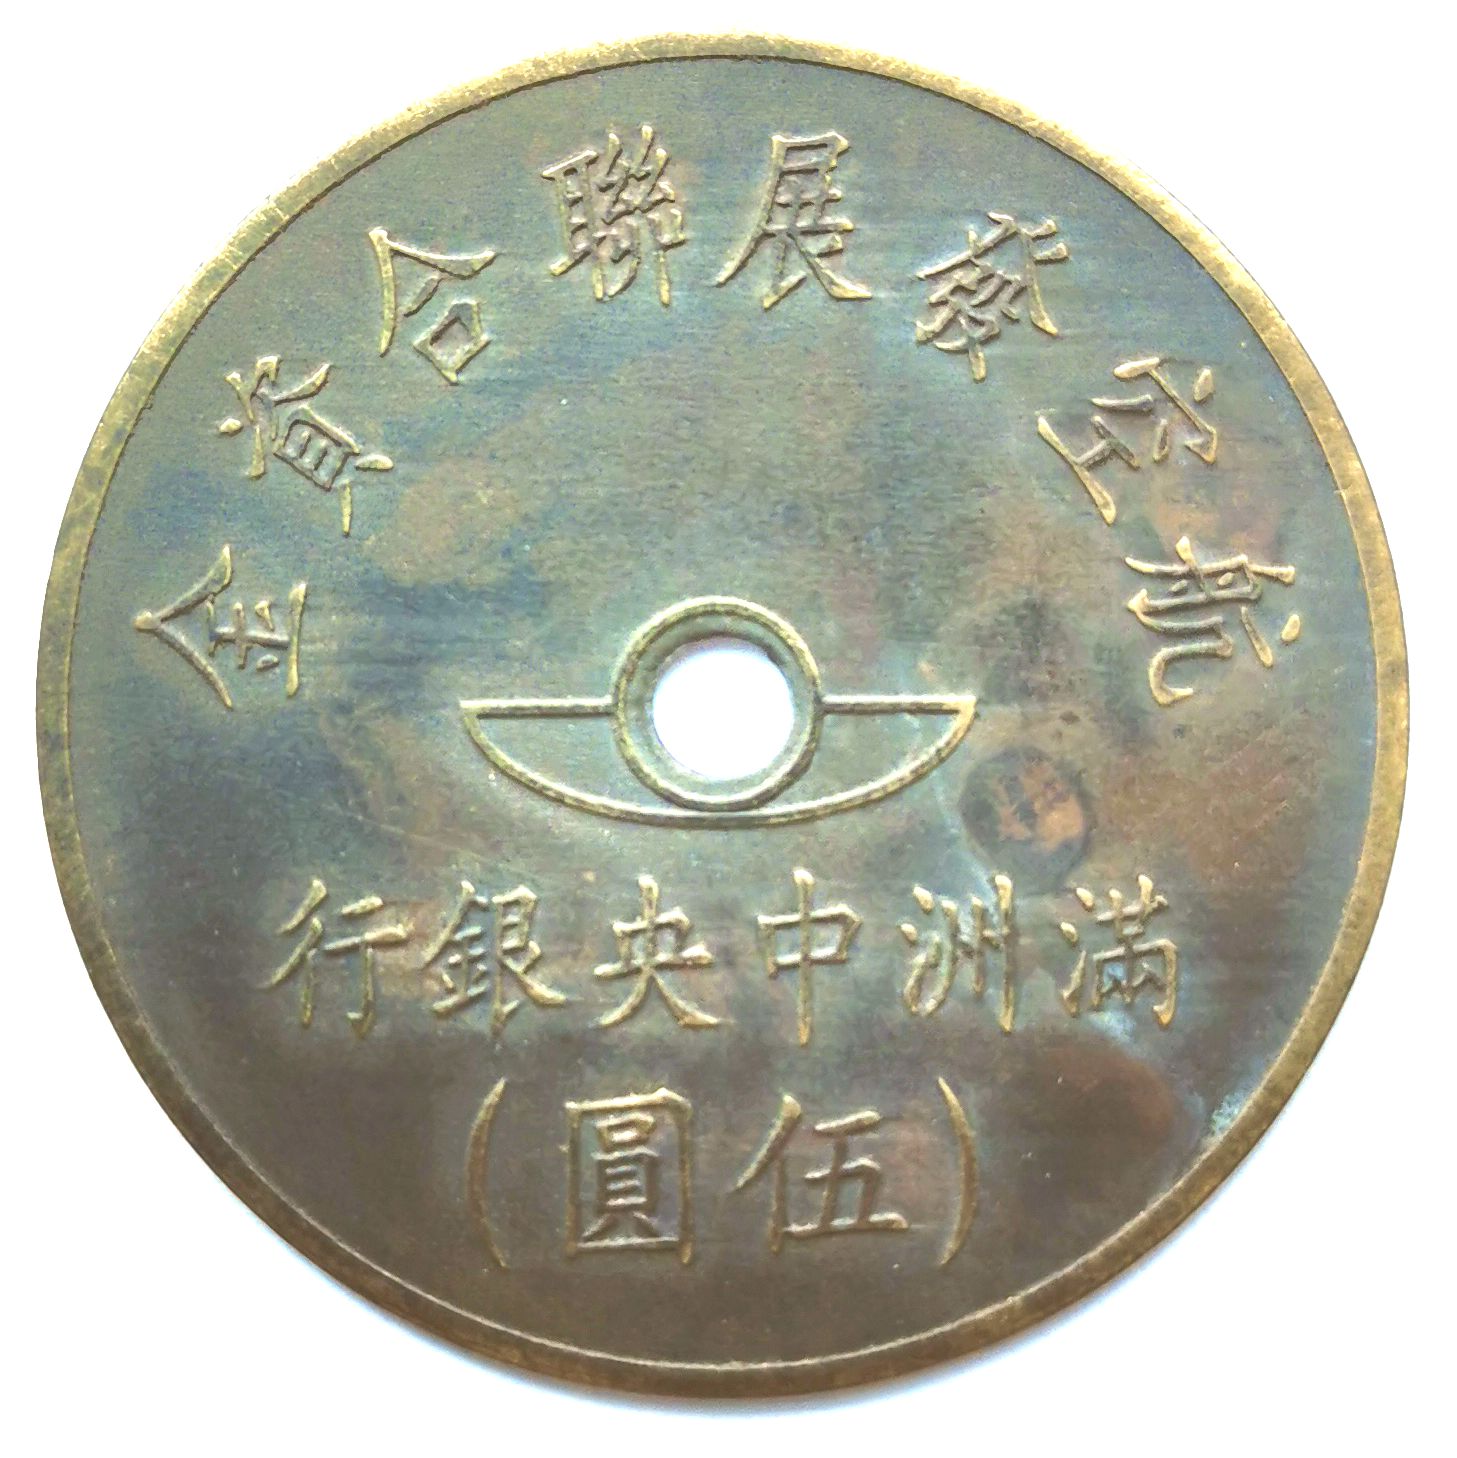 BT504, Manchukuo United Aviation Development Fund, 5 Yen Token, 1945